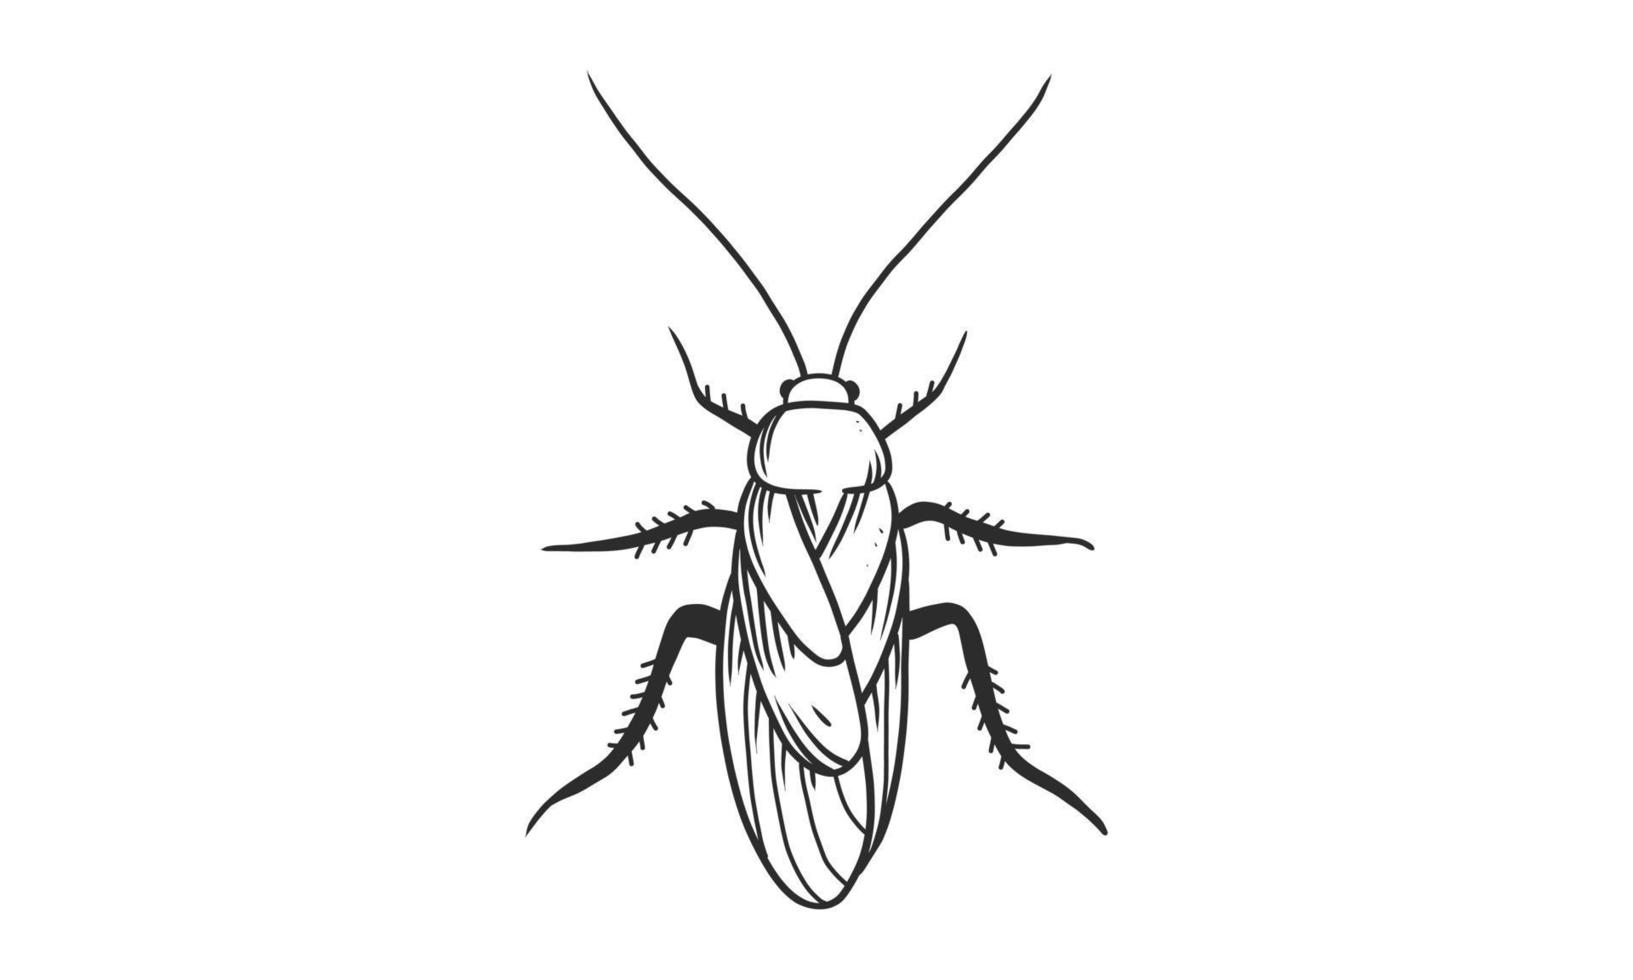 vector lineart illustratie van kakkerlak op witte achtergrond, hand getekende bovenaanzicht kakkerlak insect sketch